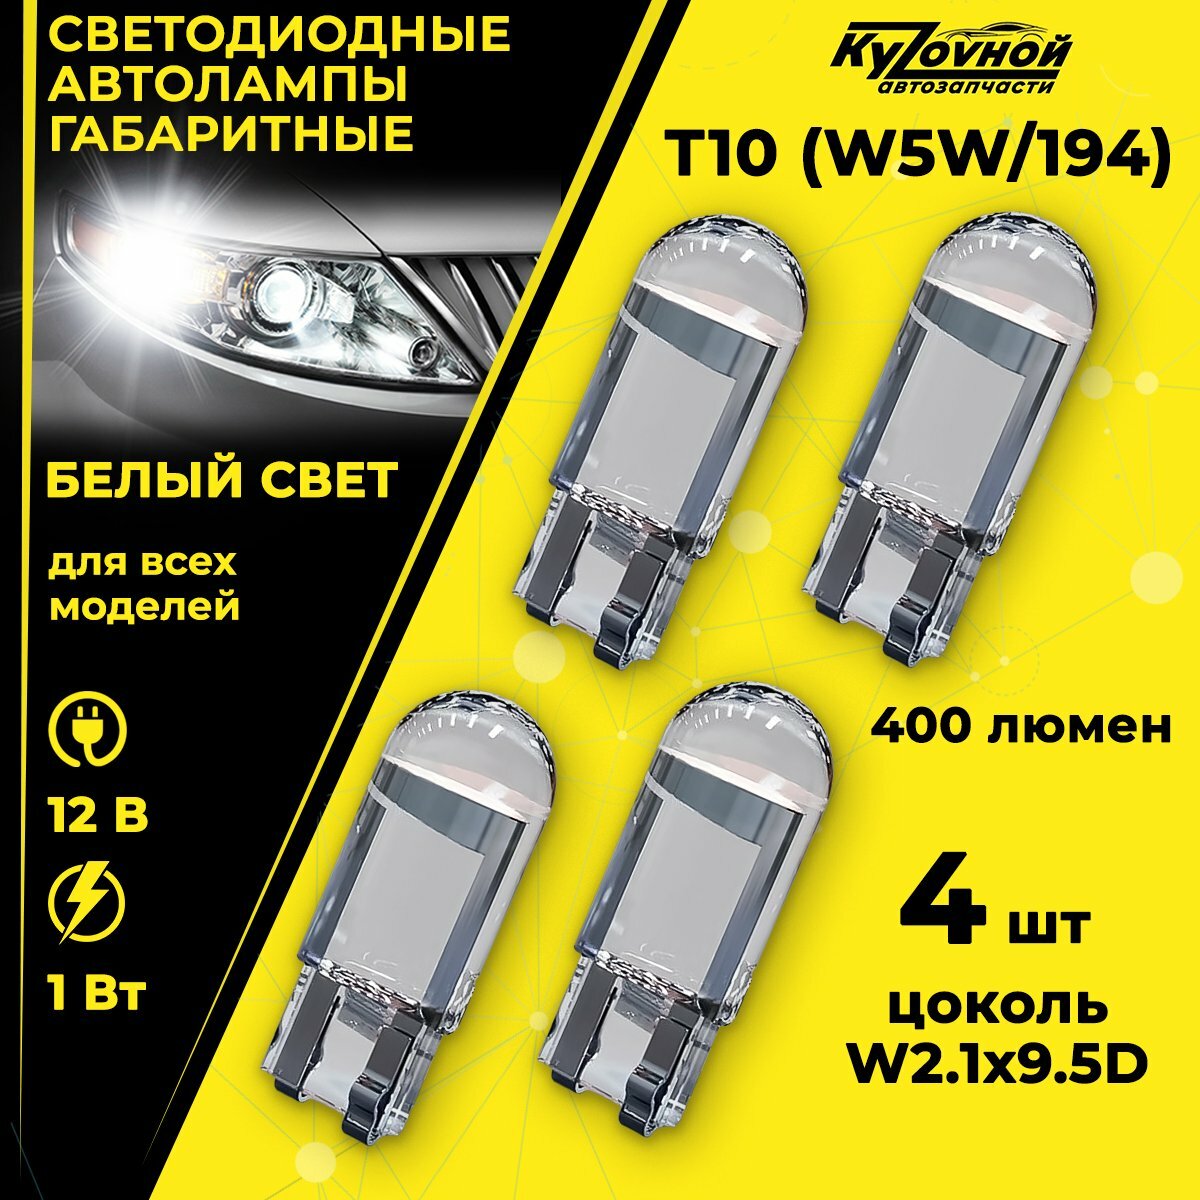 Лампа автомобильная светодиодная габаритная Т10 W5W/194, 4 шт в комплекте, цвет белый